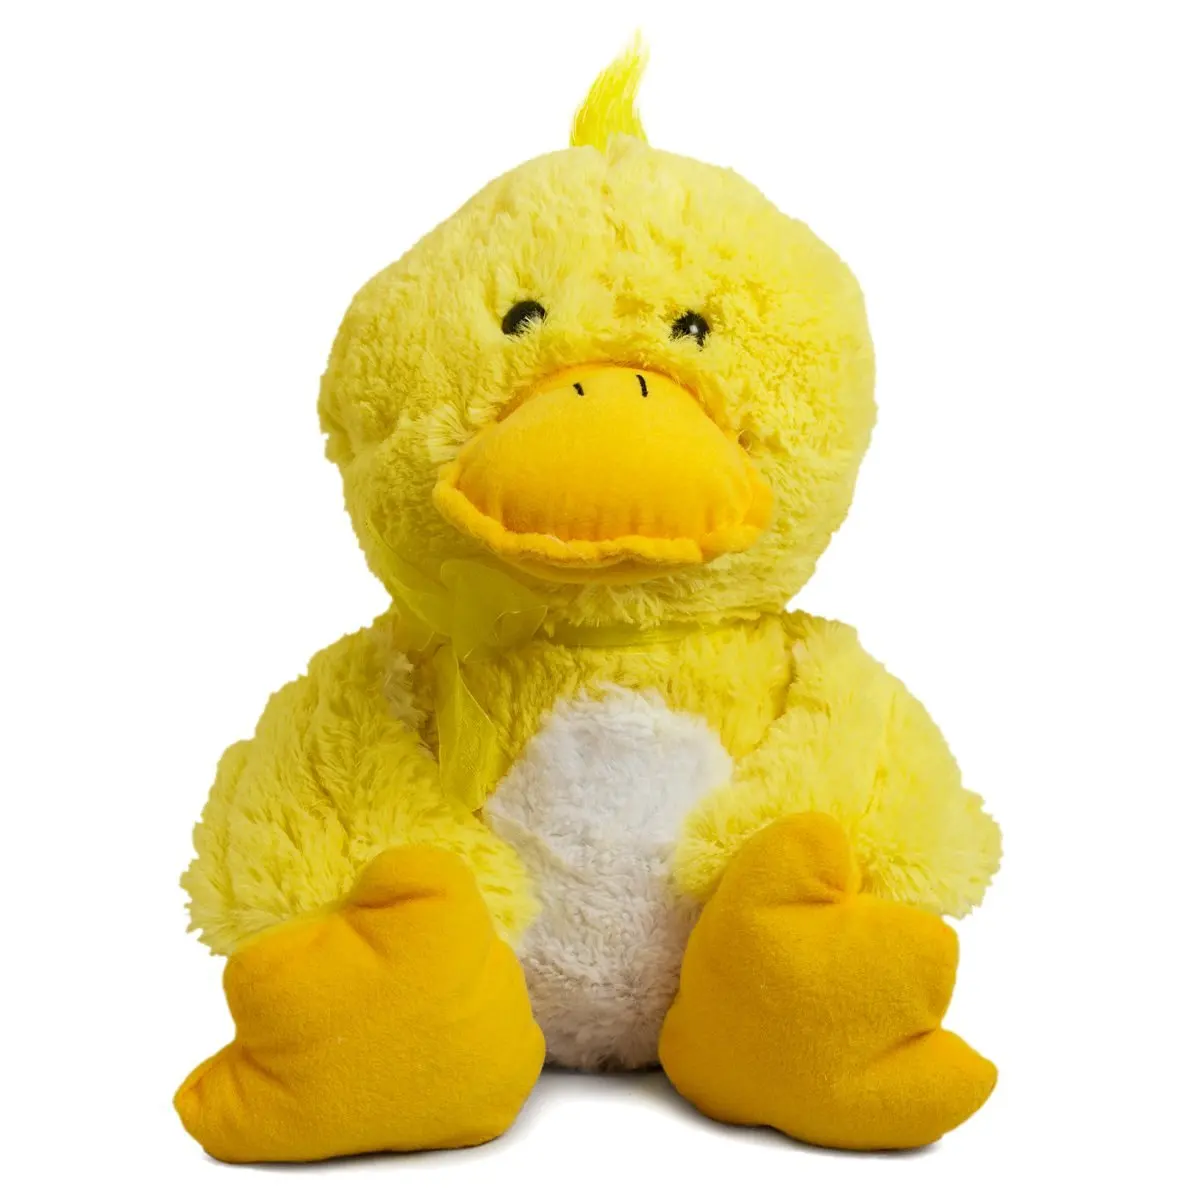 ducky momo stuffed animal